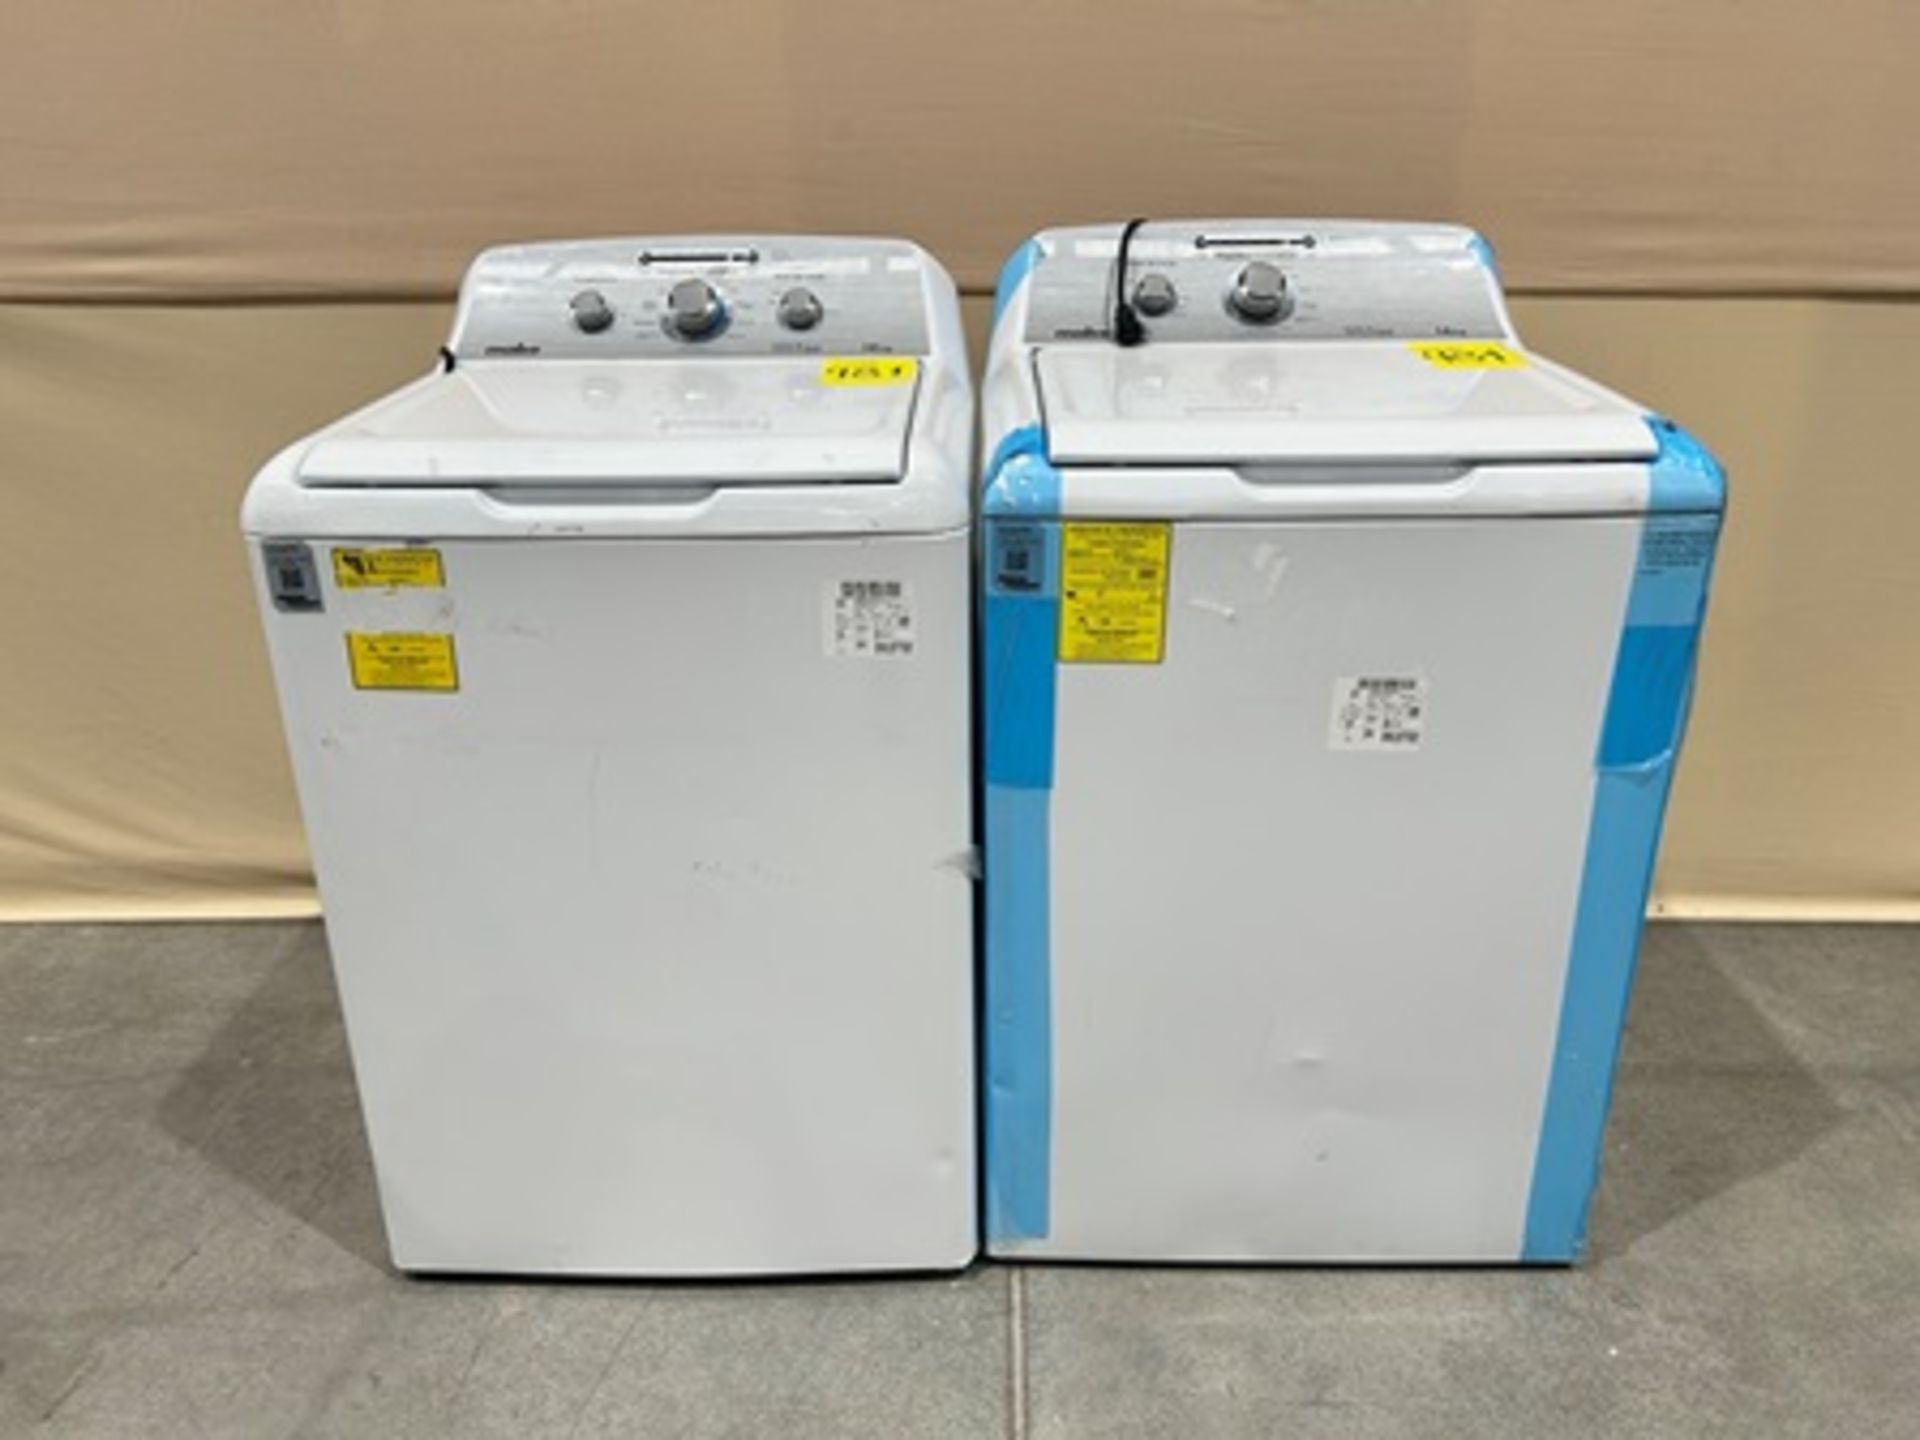 Lote de 2 lavadoras contiene: 1 Lavadora de 18 KG Marca MABE, Modelo LMA78113CBAB01, Serie S45302,